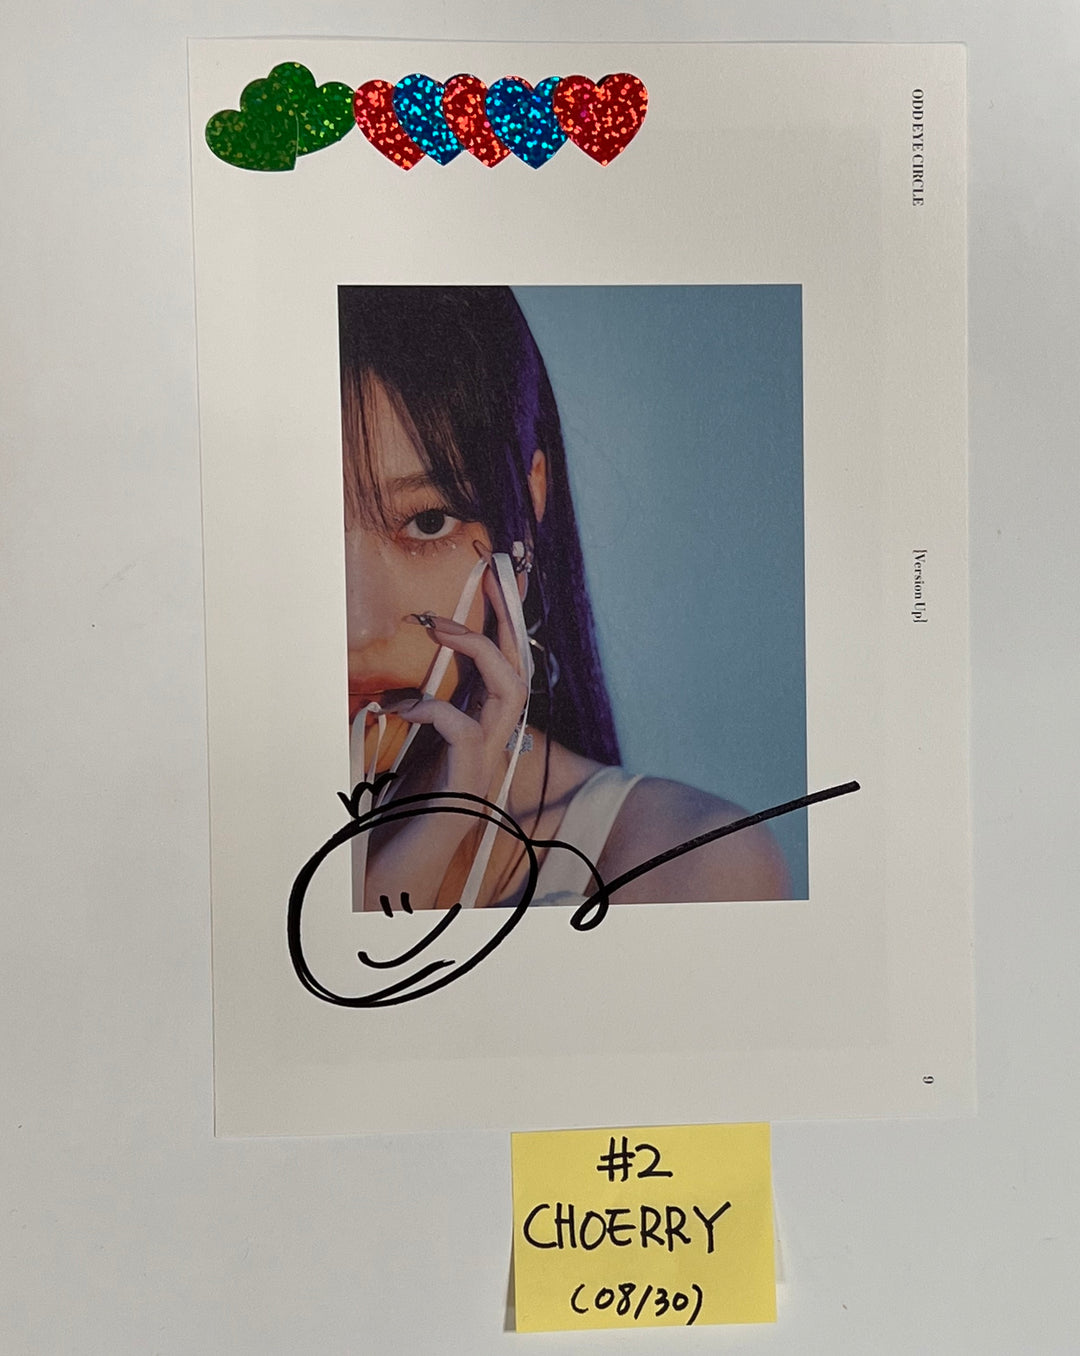 ODD EYE CIRCLE「バージョンアップ」 - ファンサインイベントアルバムからのカットページ [23.08.30] 